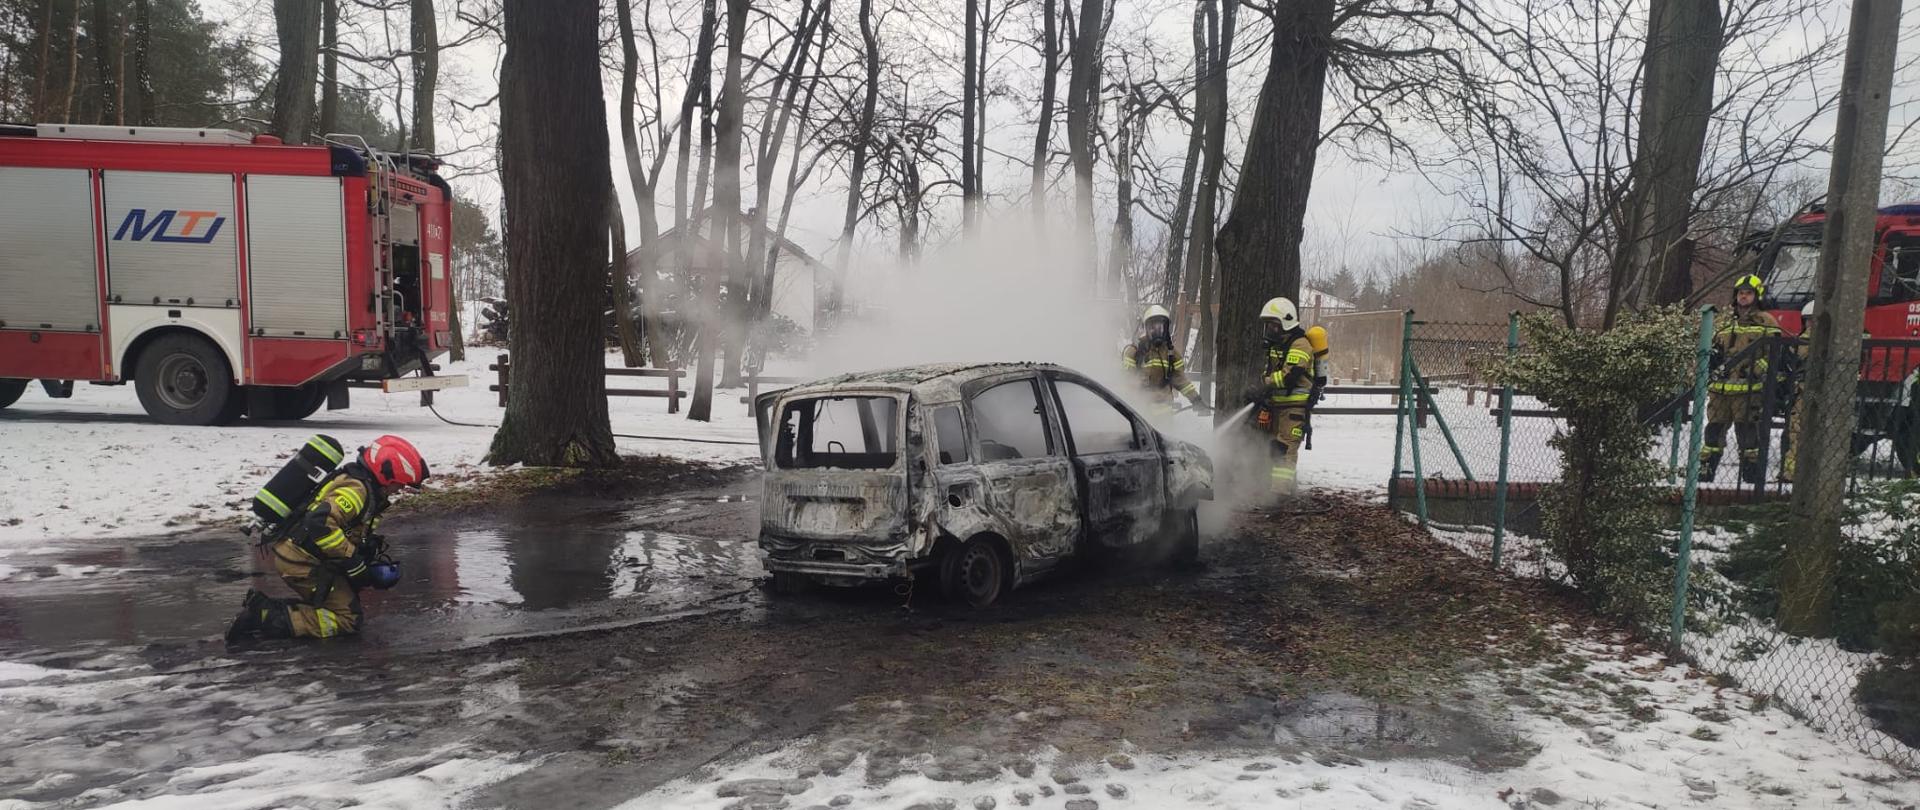 Całkowicie spalony samochód osobowy, strażacy dogaszający samochód, w tle samochody pożarnicze